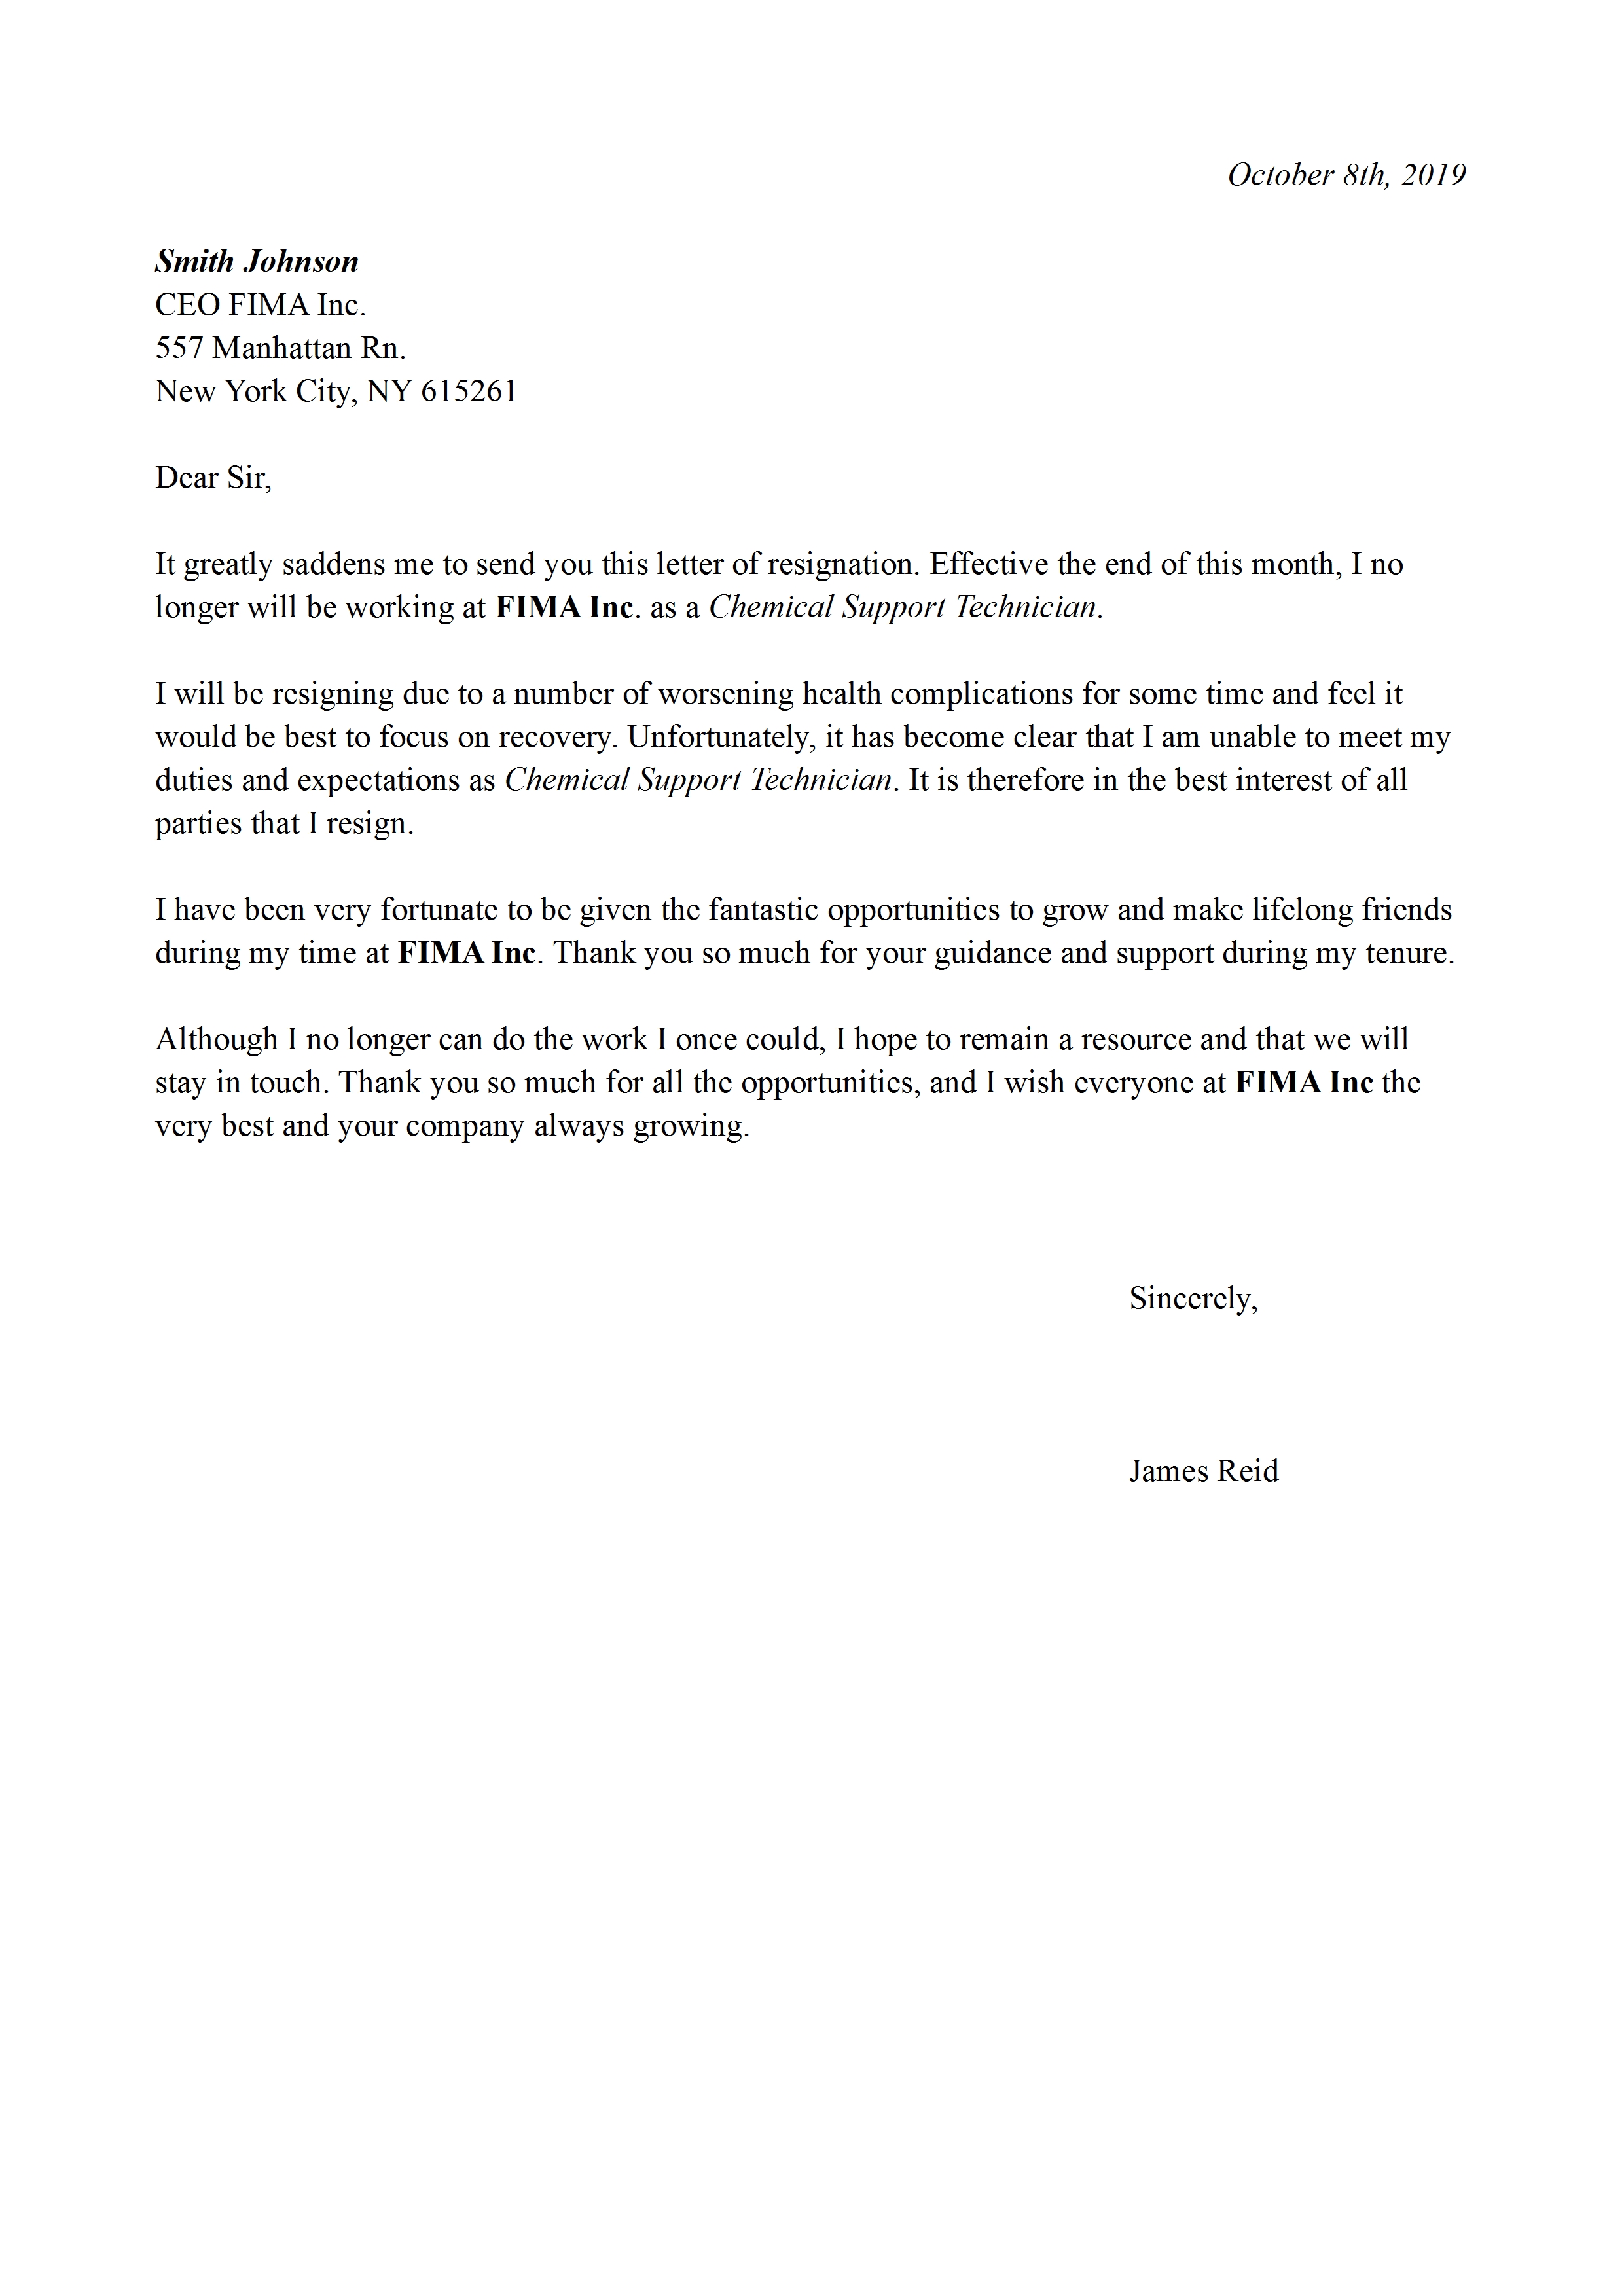 Formal Resignation Letter 1 Month Notice from detiklife.com